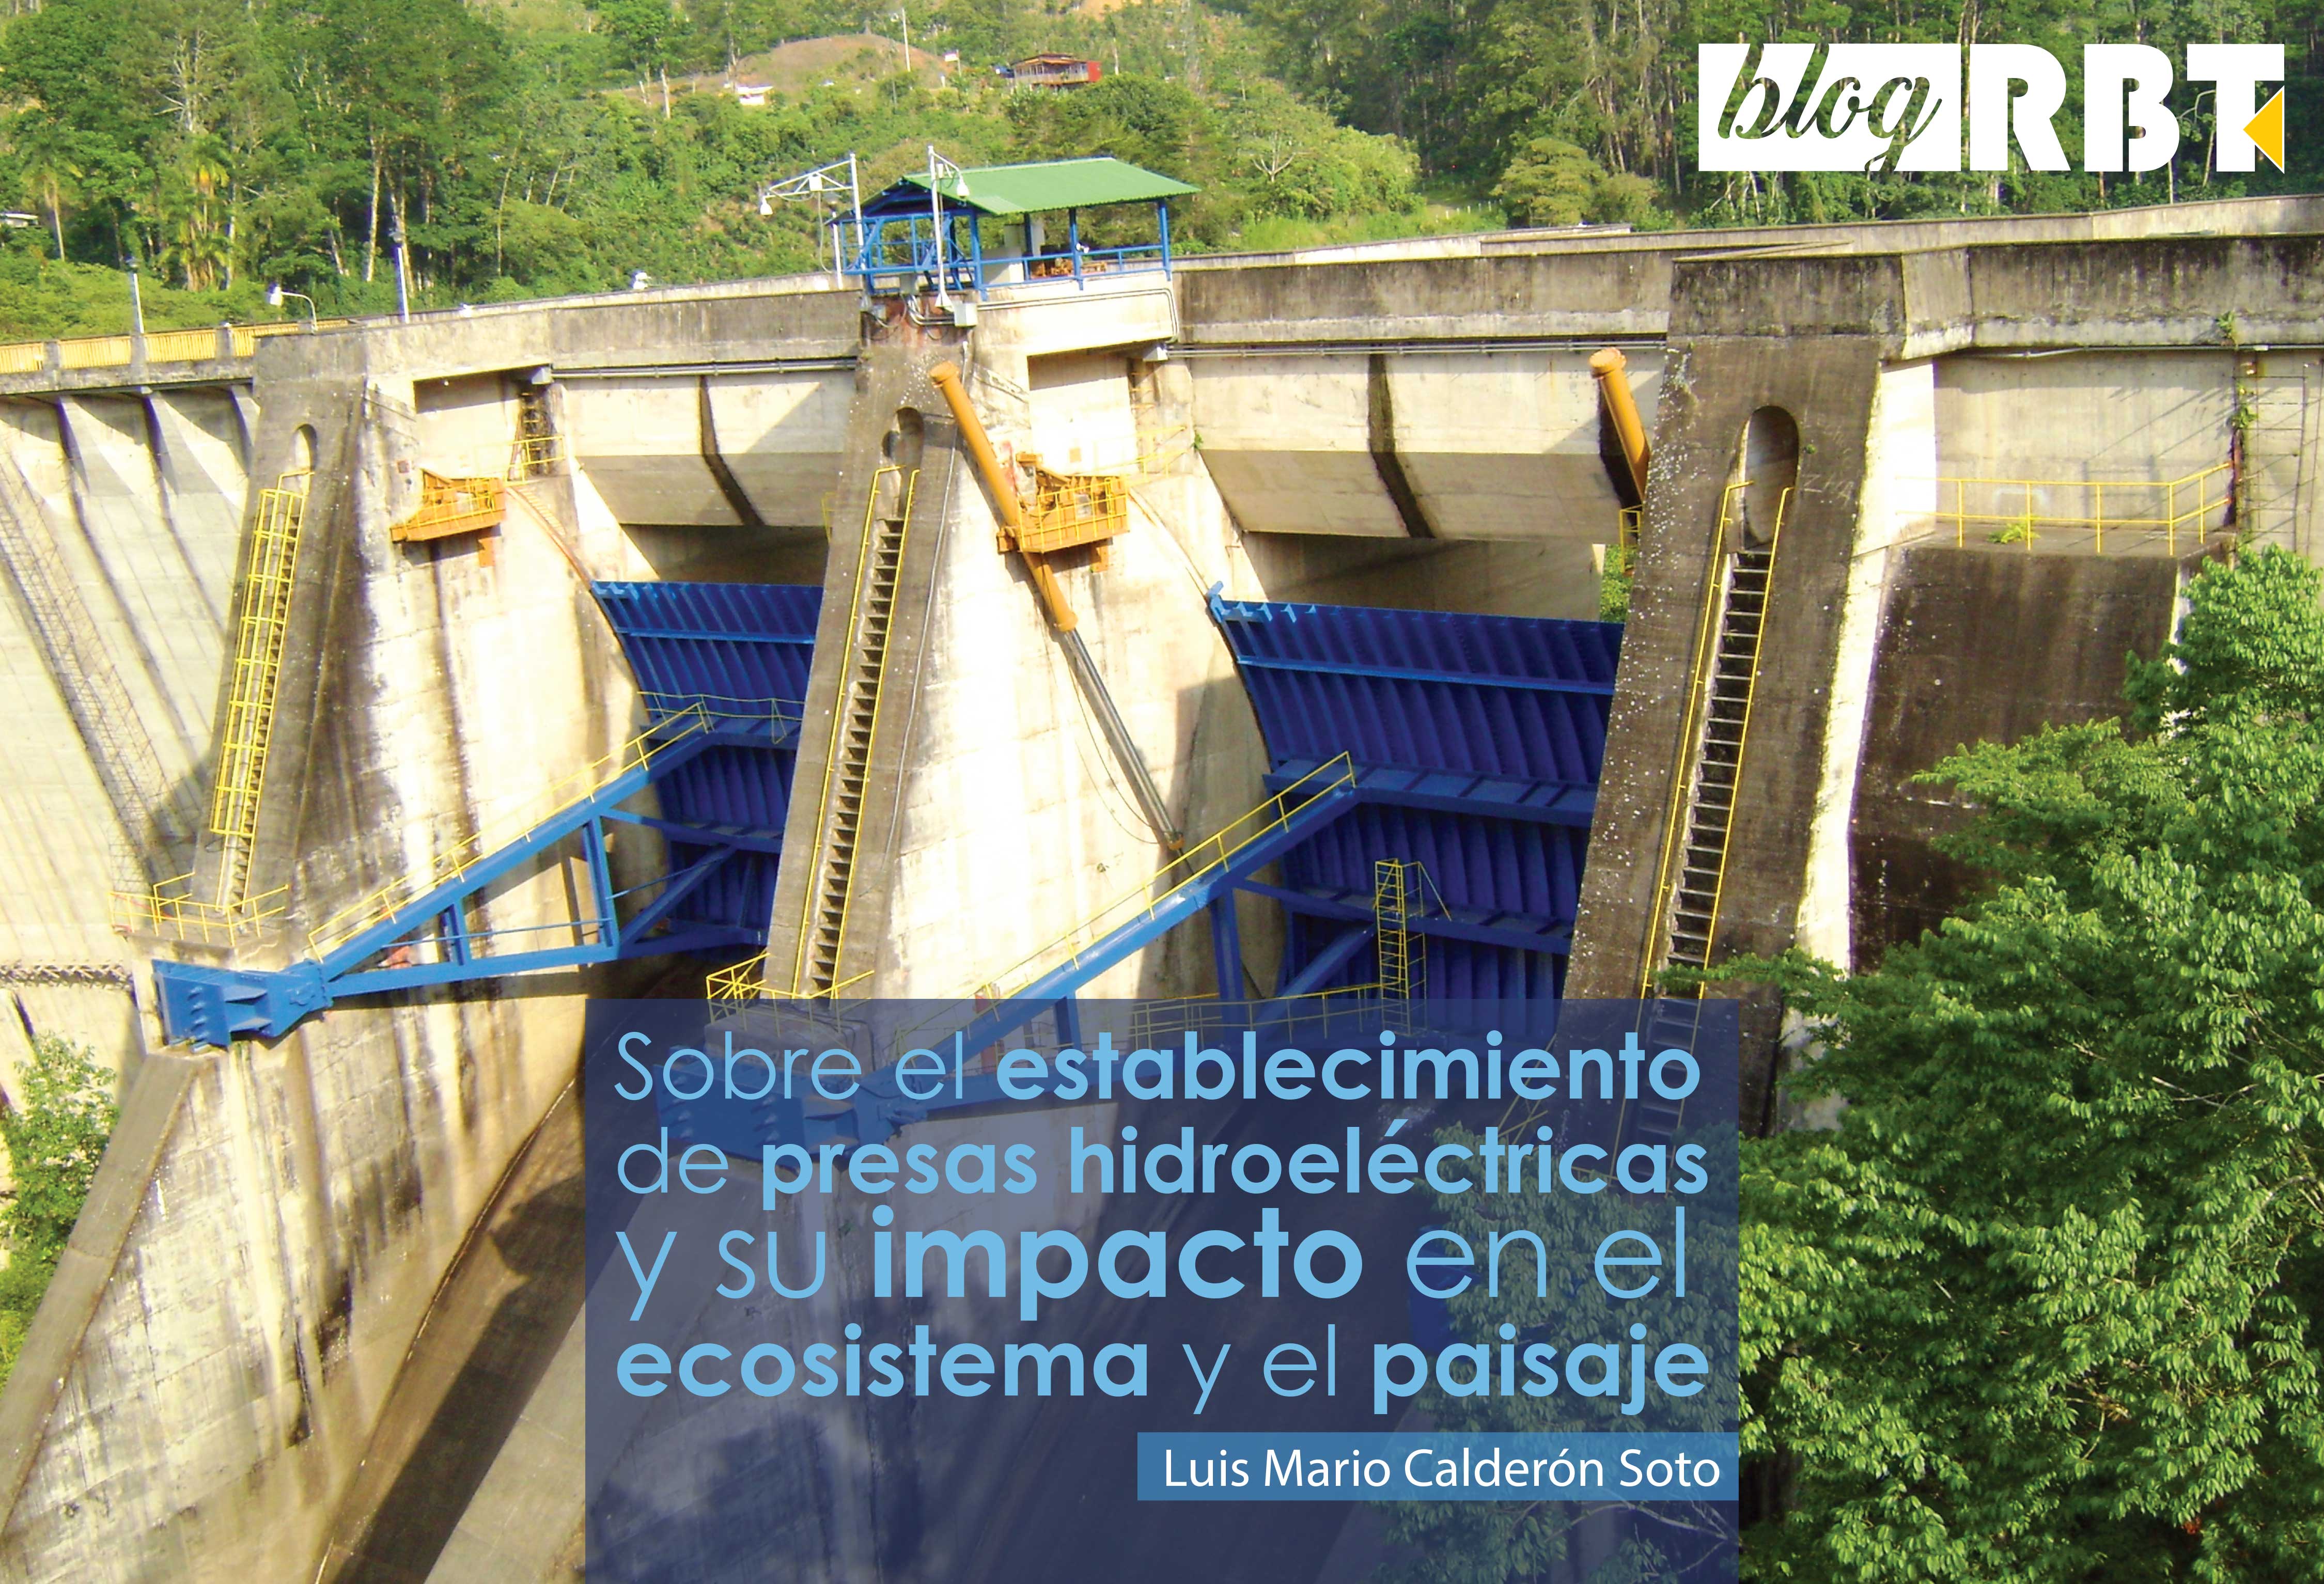 Vista cercana de la represa hidroeléctrica Cachí, provincia de Cartago, Costa Rica. Fotografía (Dominio público)